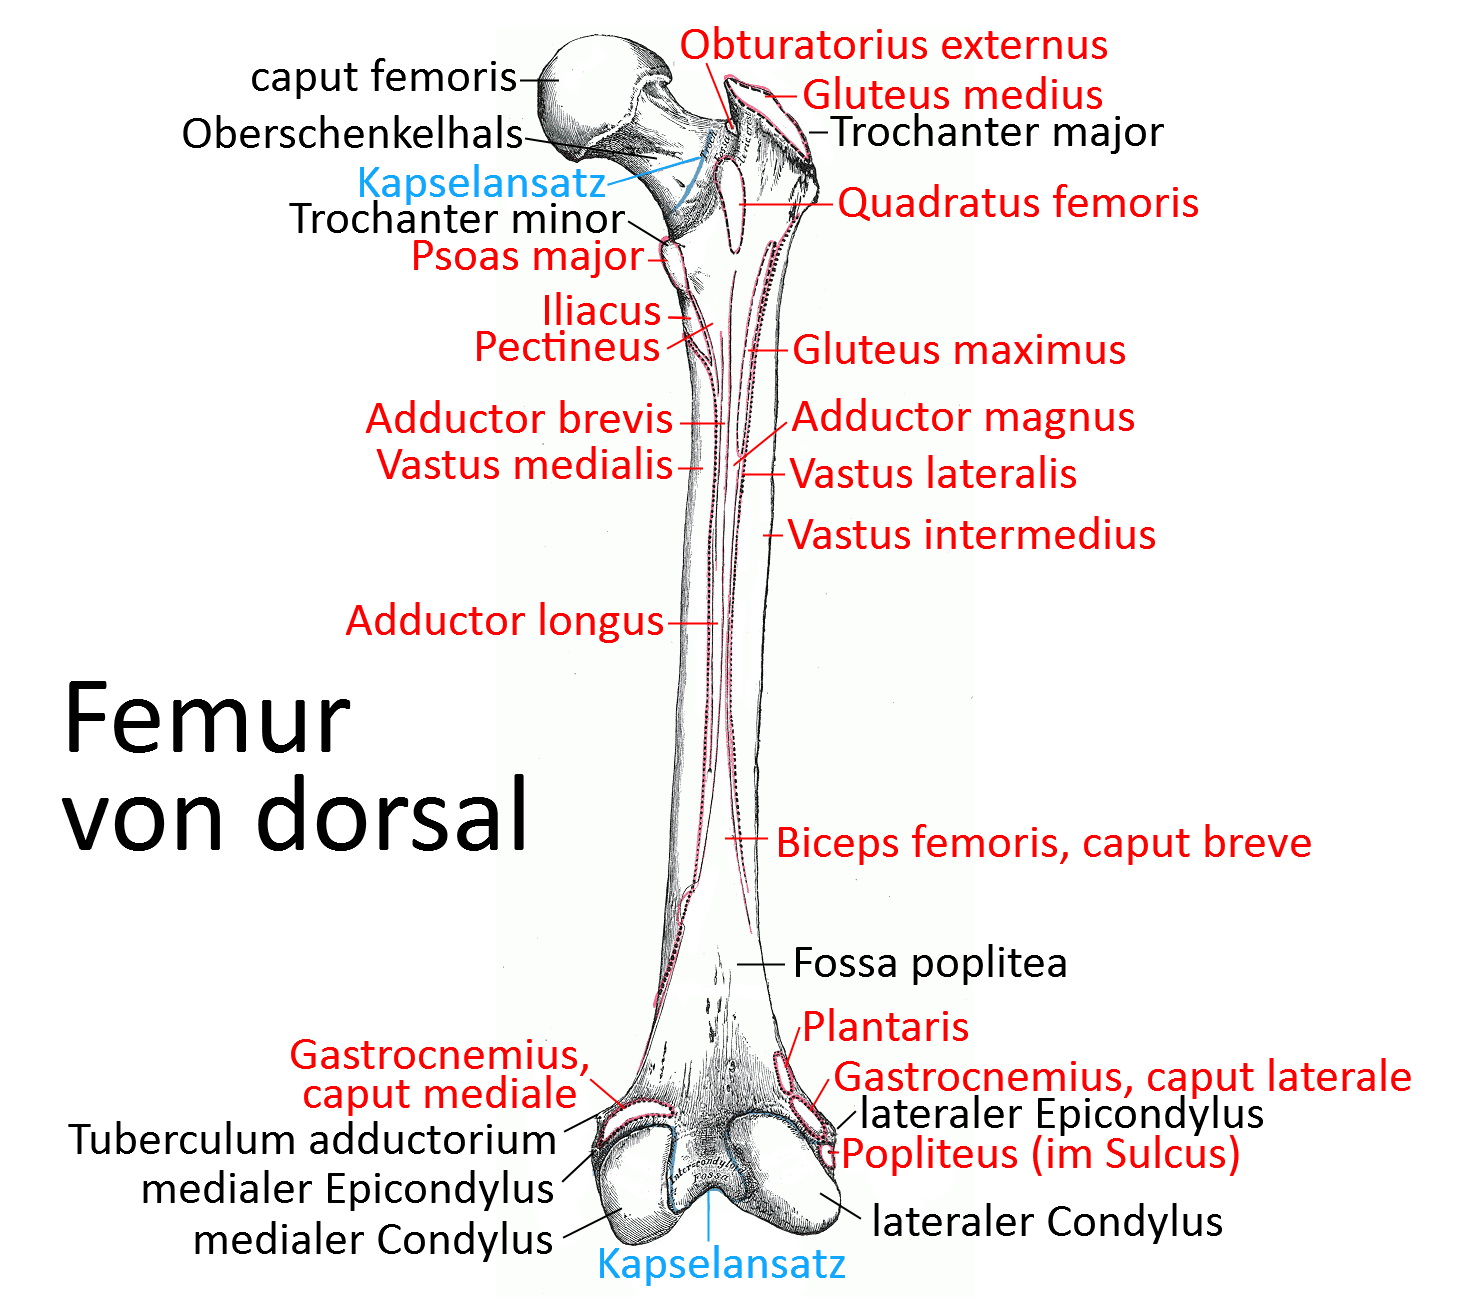 Femur, dorsal